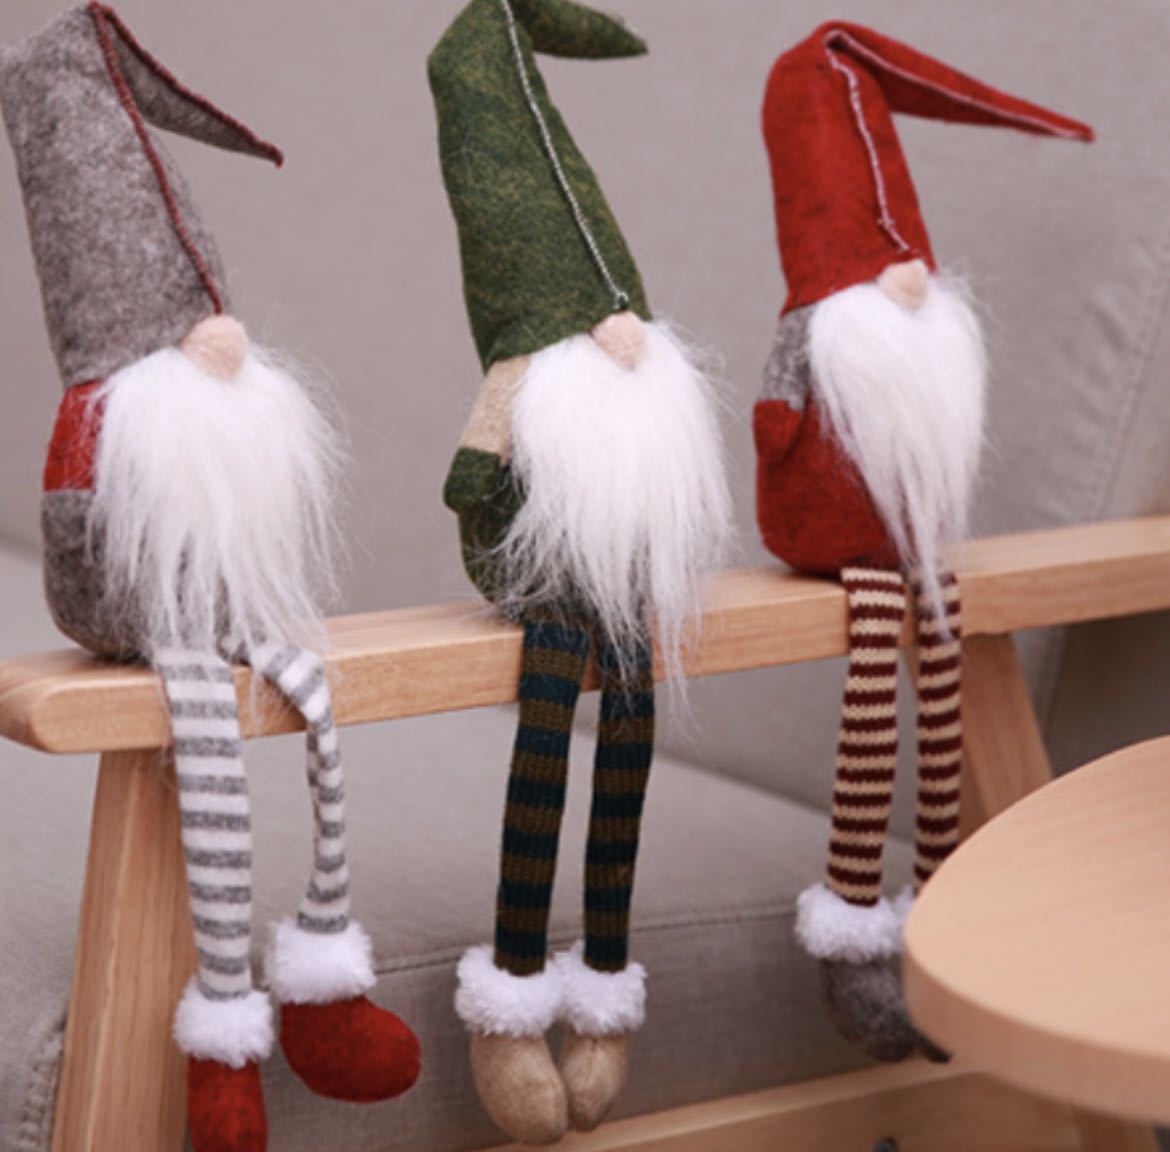 トムテ人形 3体セット クリスマス 北欧 妖精 装飾 インテリア 飾り 足ぶら サンタクロース_画像2